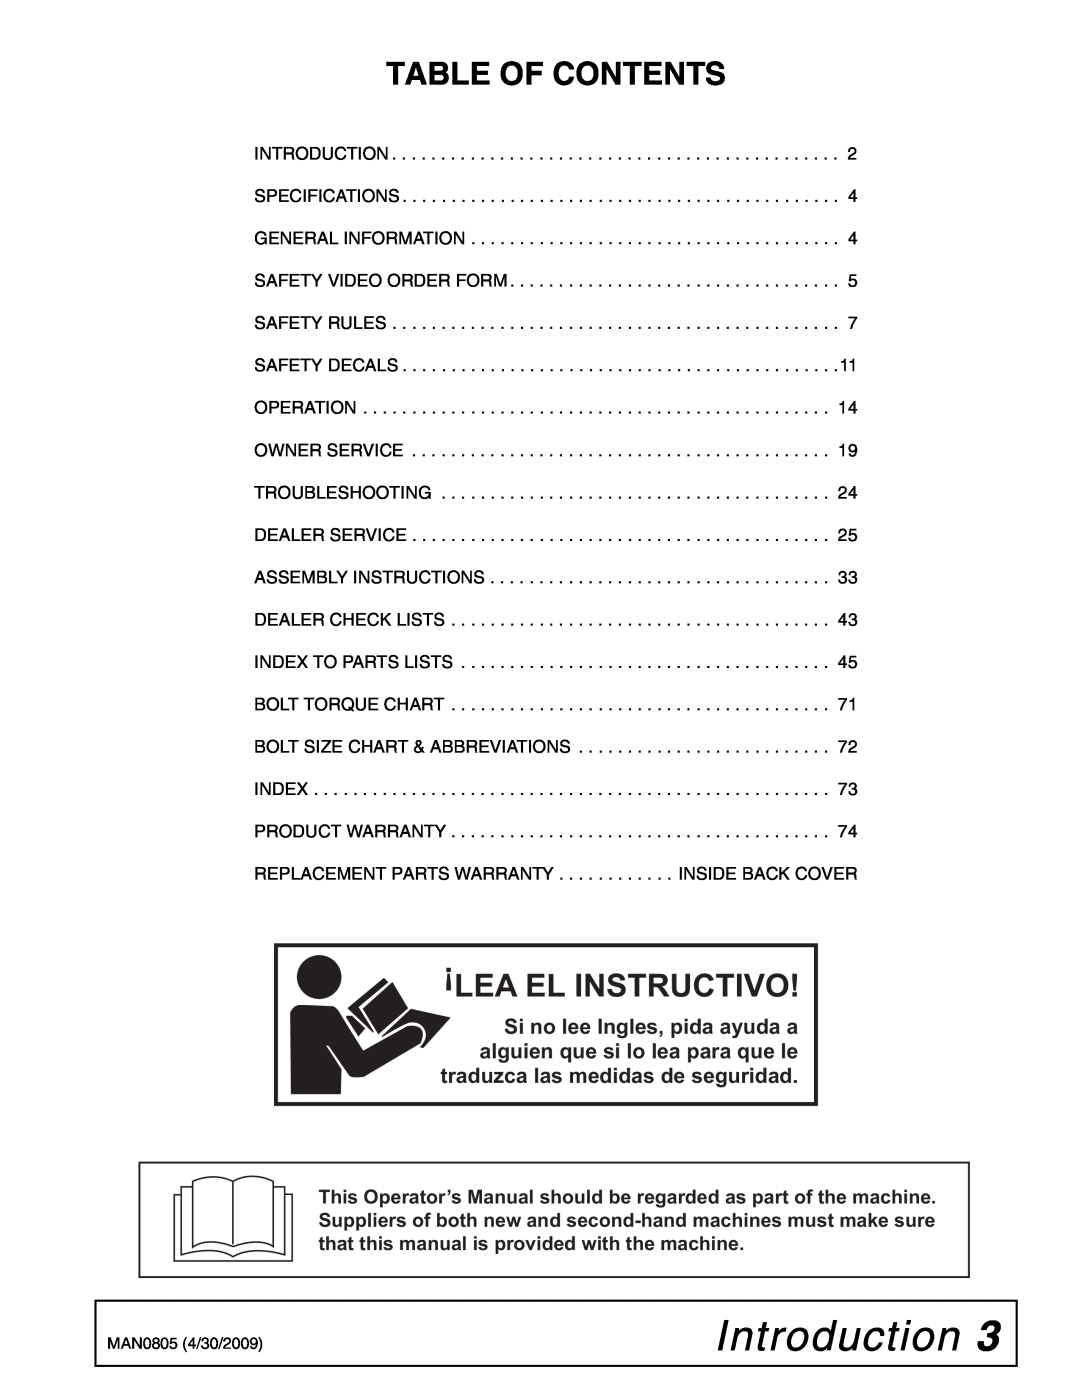 Woods Equipment BW180HBQ, BW126HBQ manual Introduction, Table Of Contents, Lea El Instructivo 